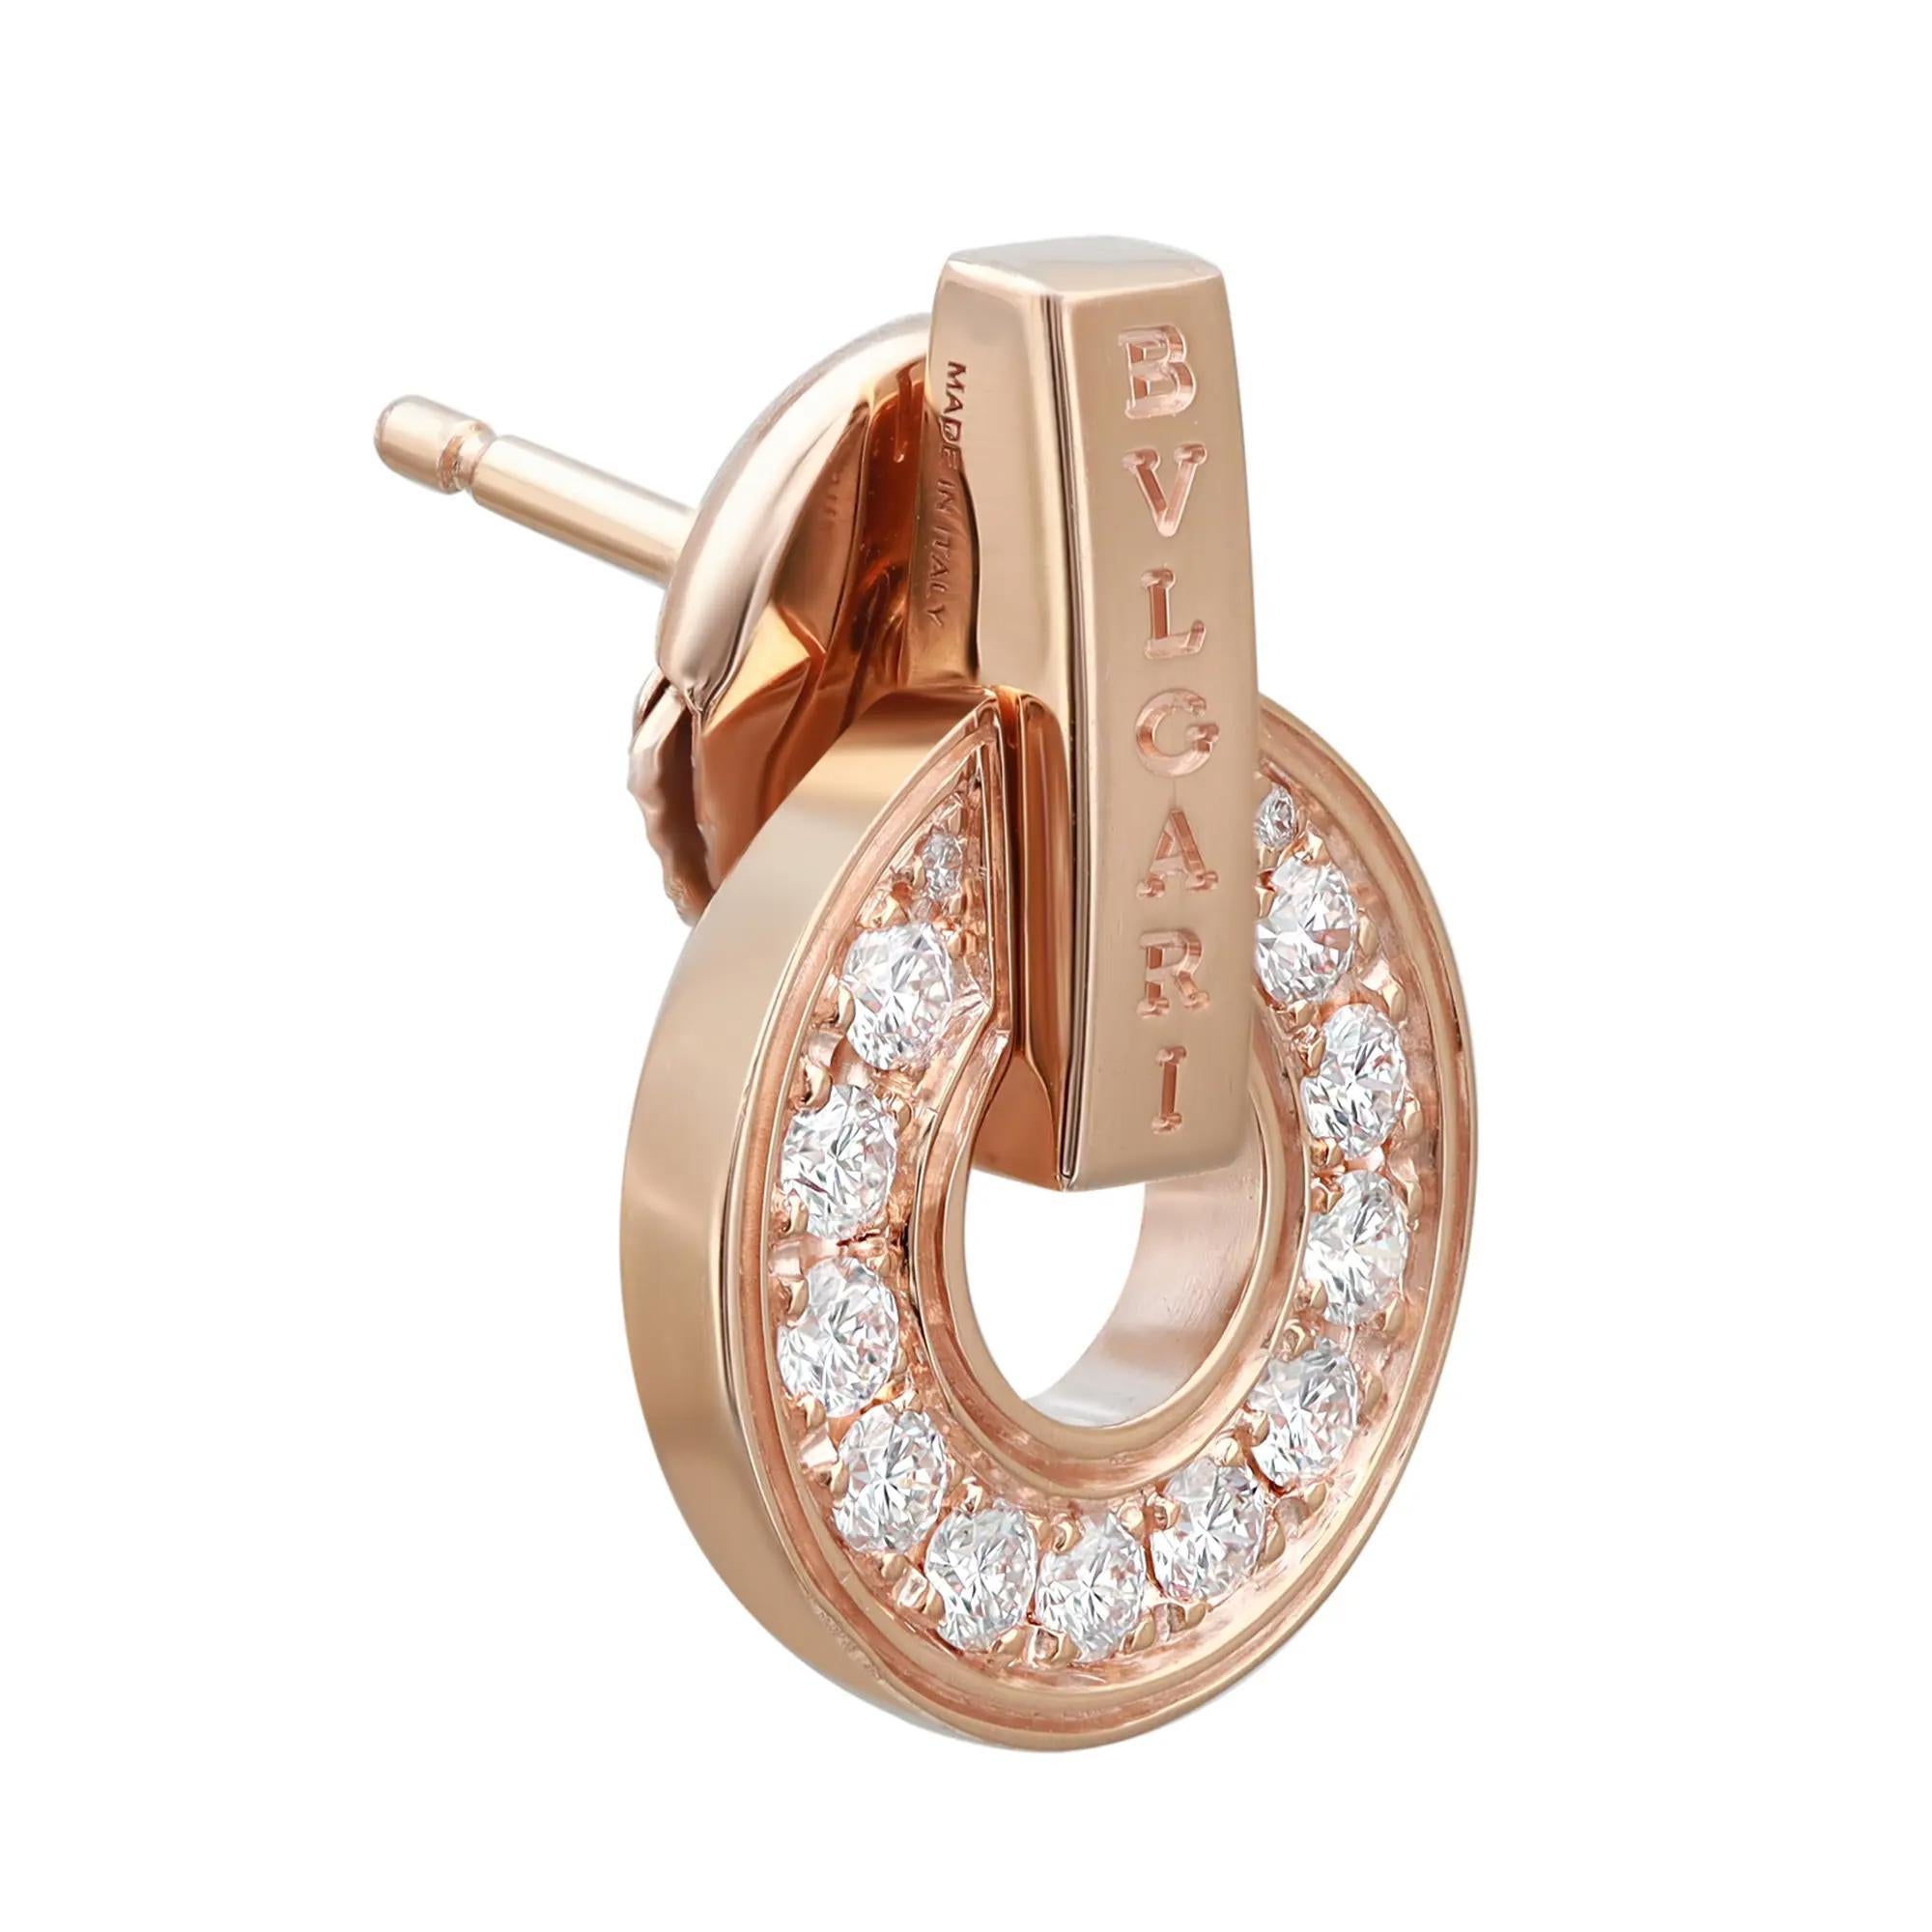 bvlgari earrings rose gold